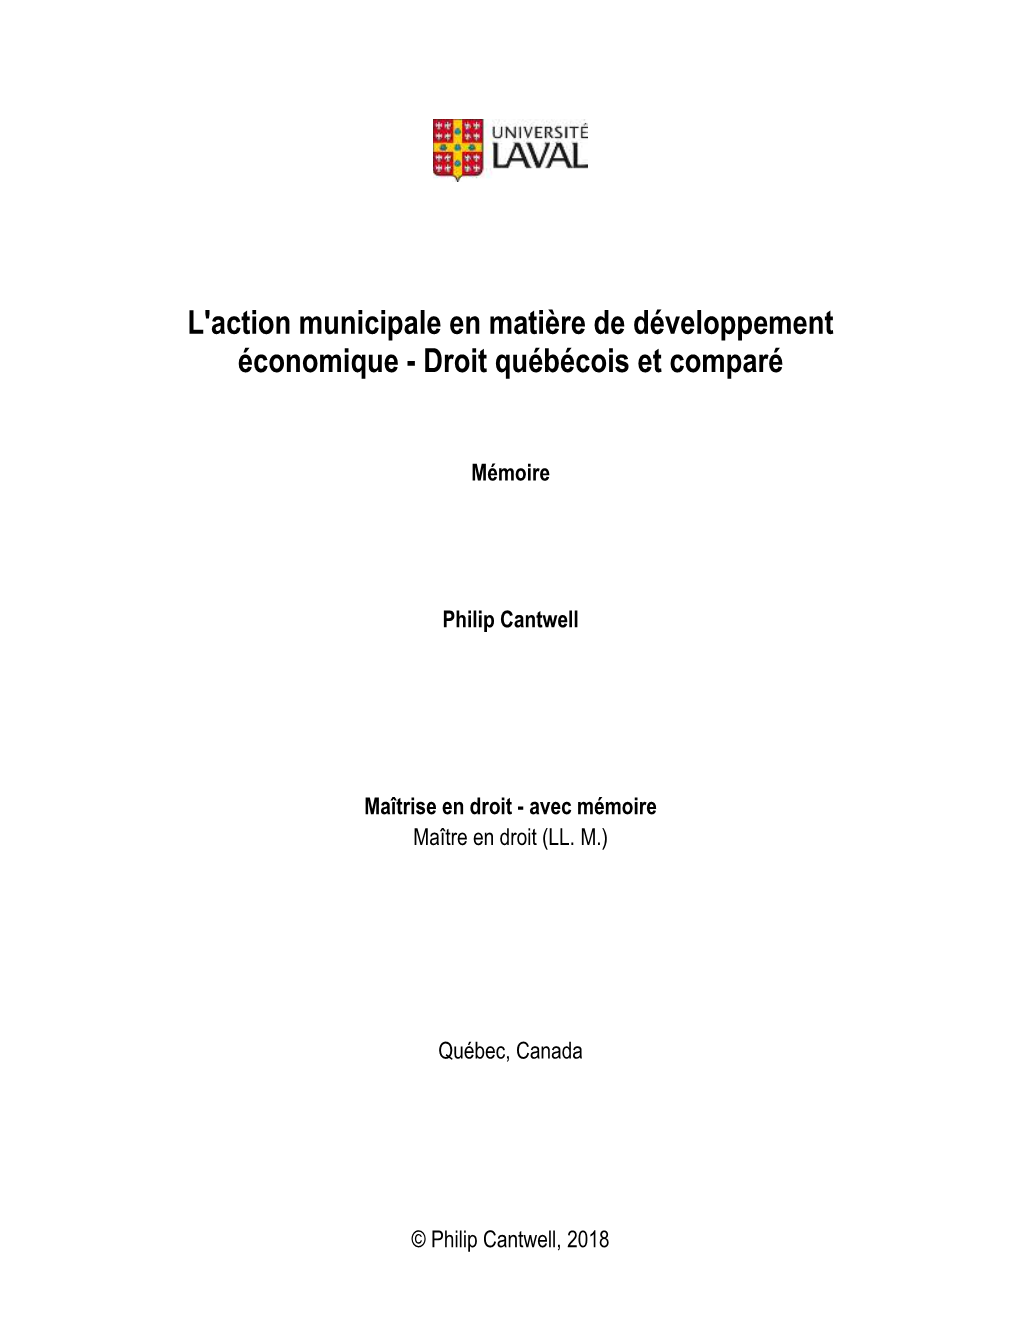 L'action Municipale En Matière De Développement Économique - Droit Québécois Et Comparé